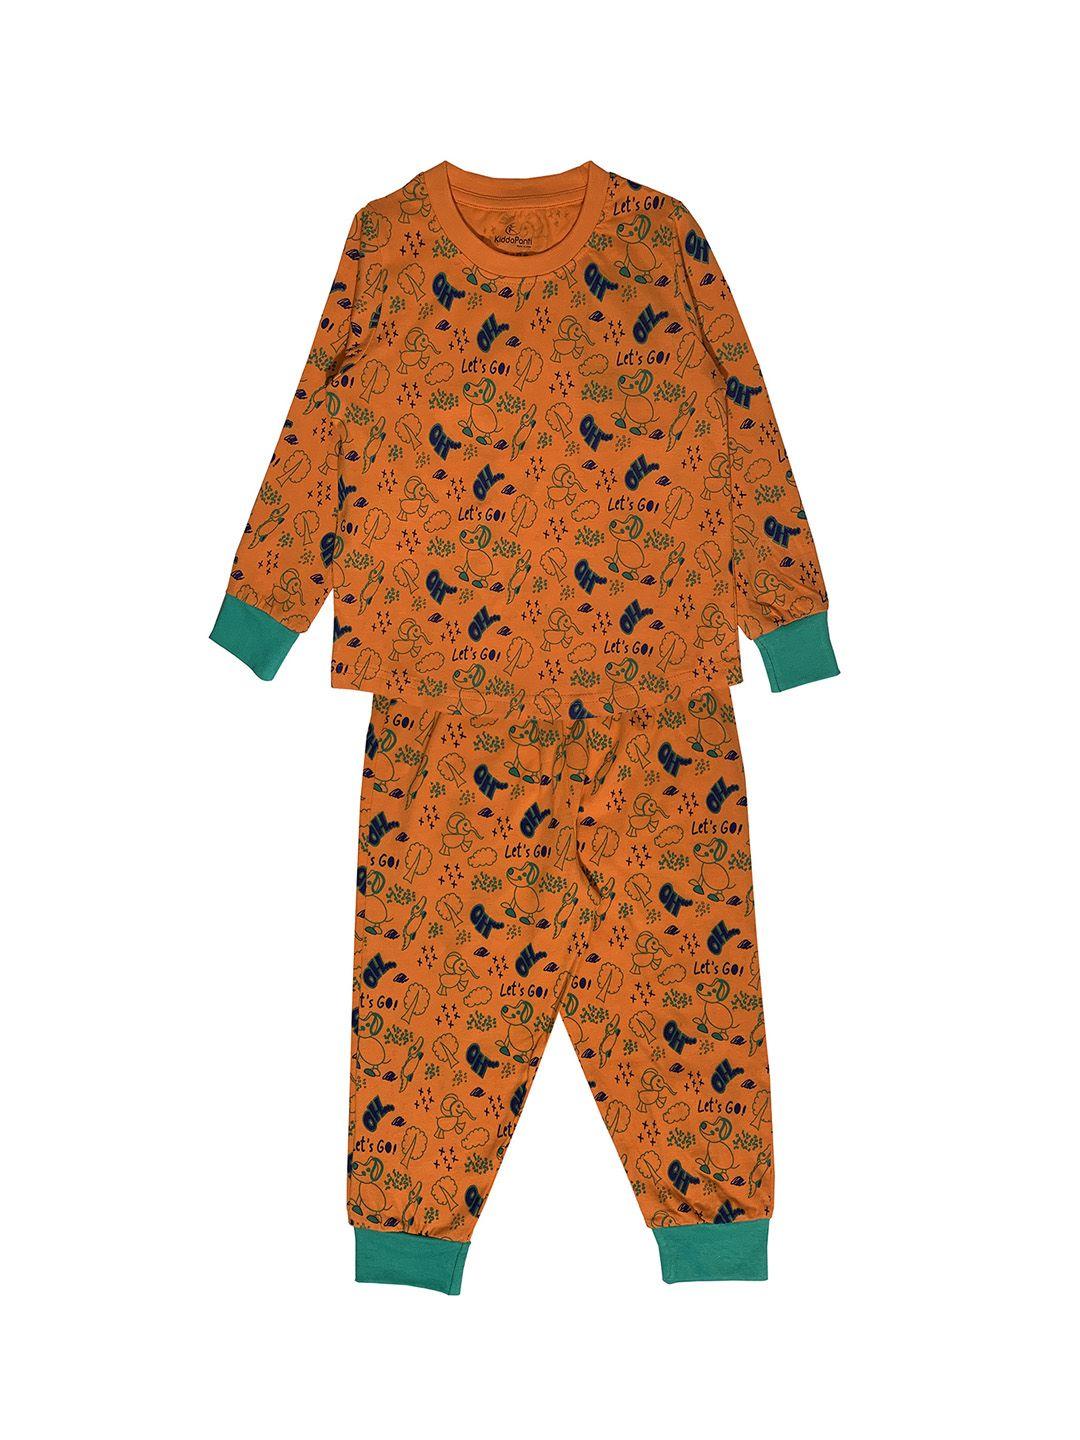 kiddopanti boys orange & green animal aop printed night suit